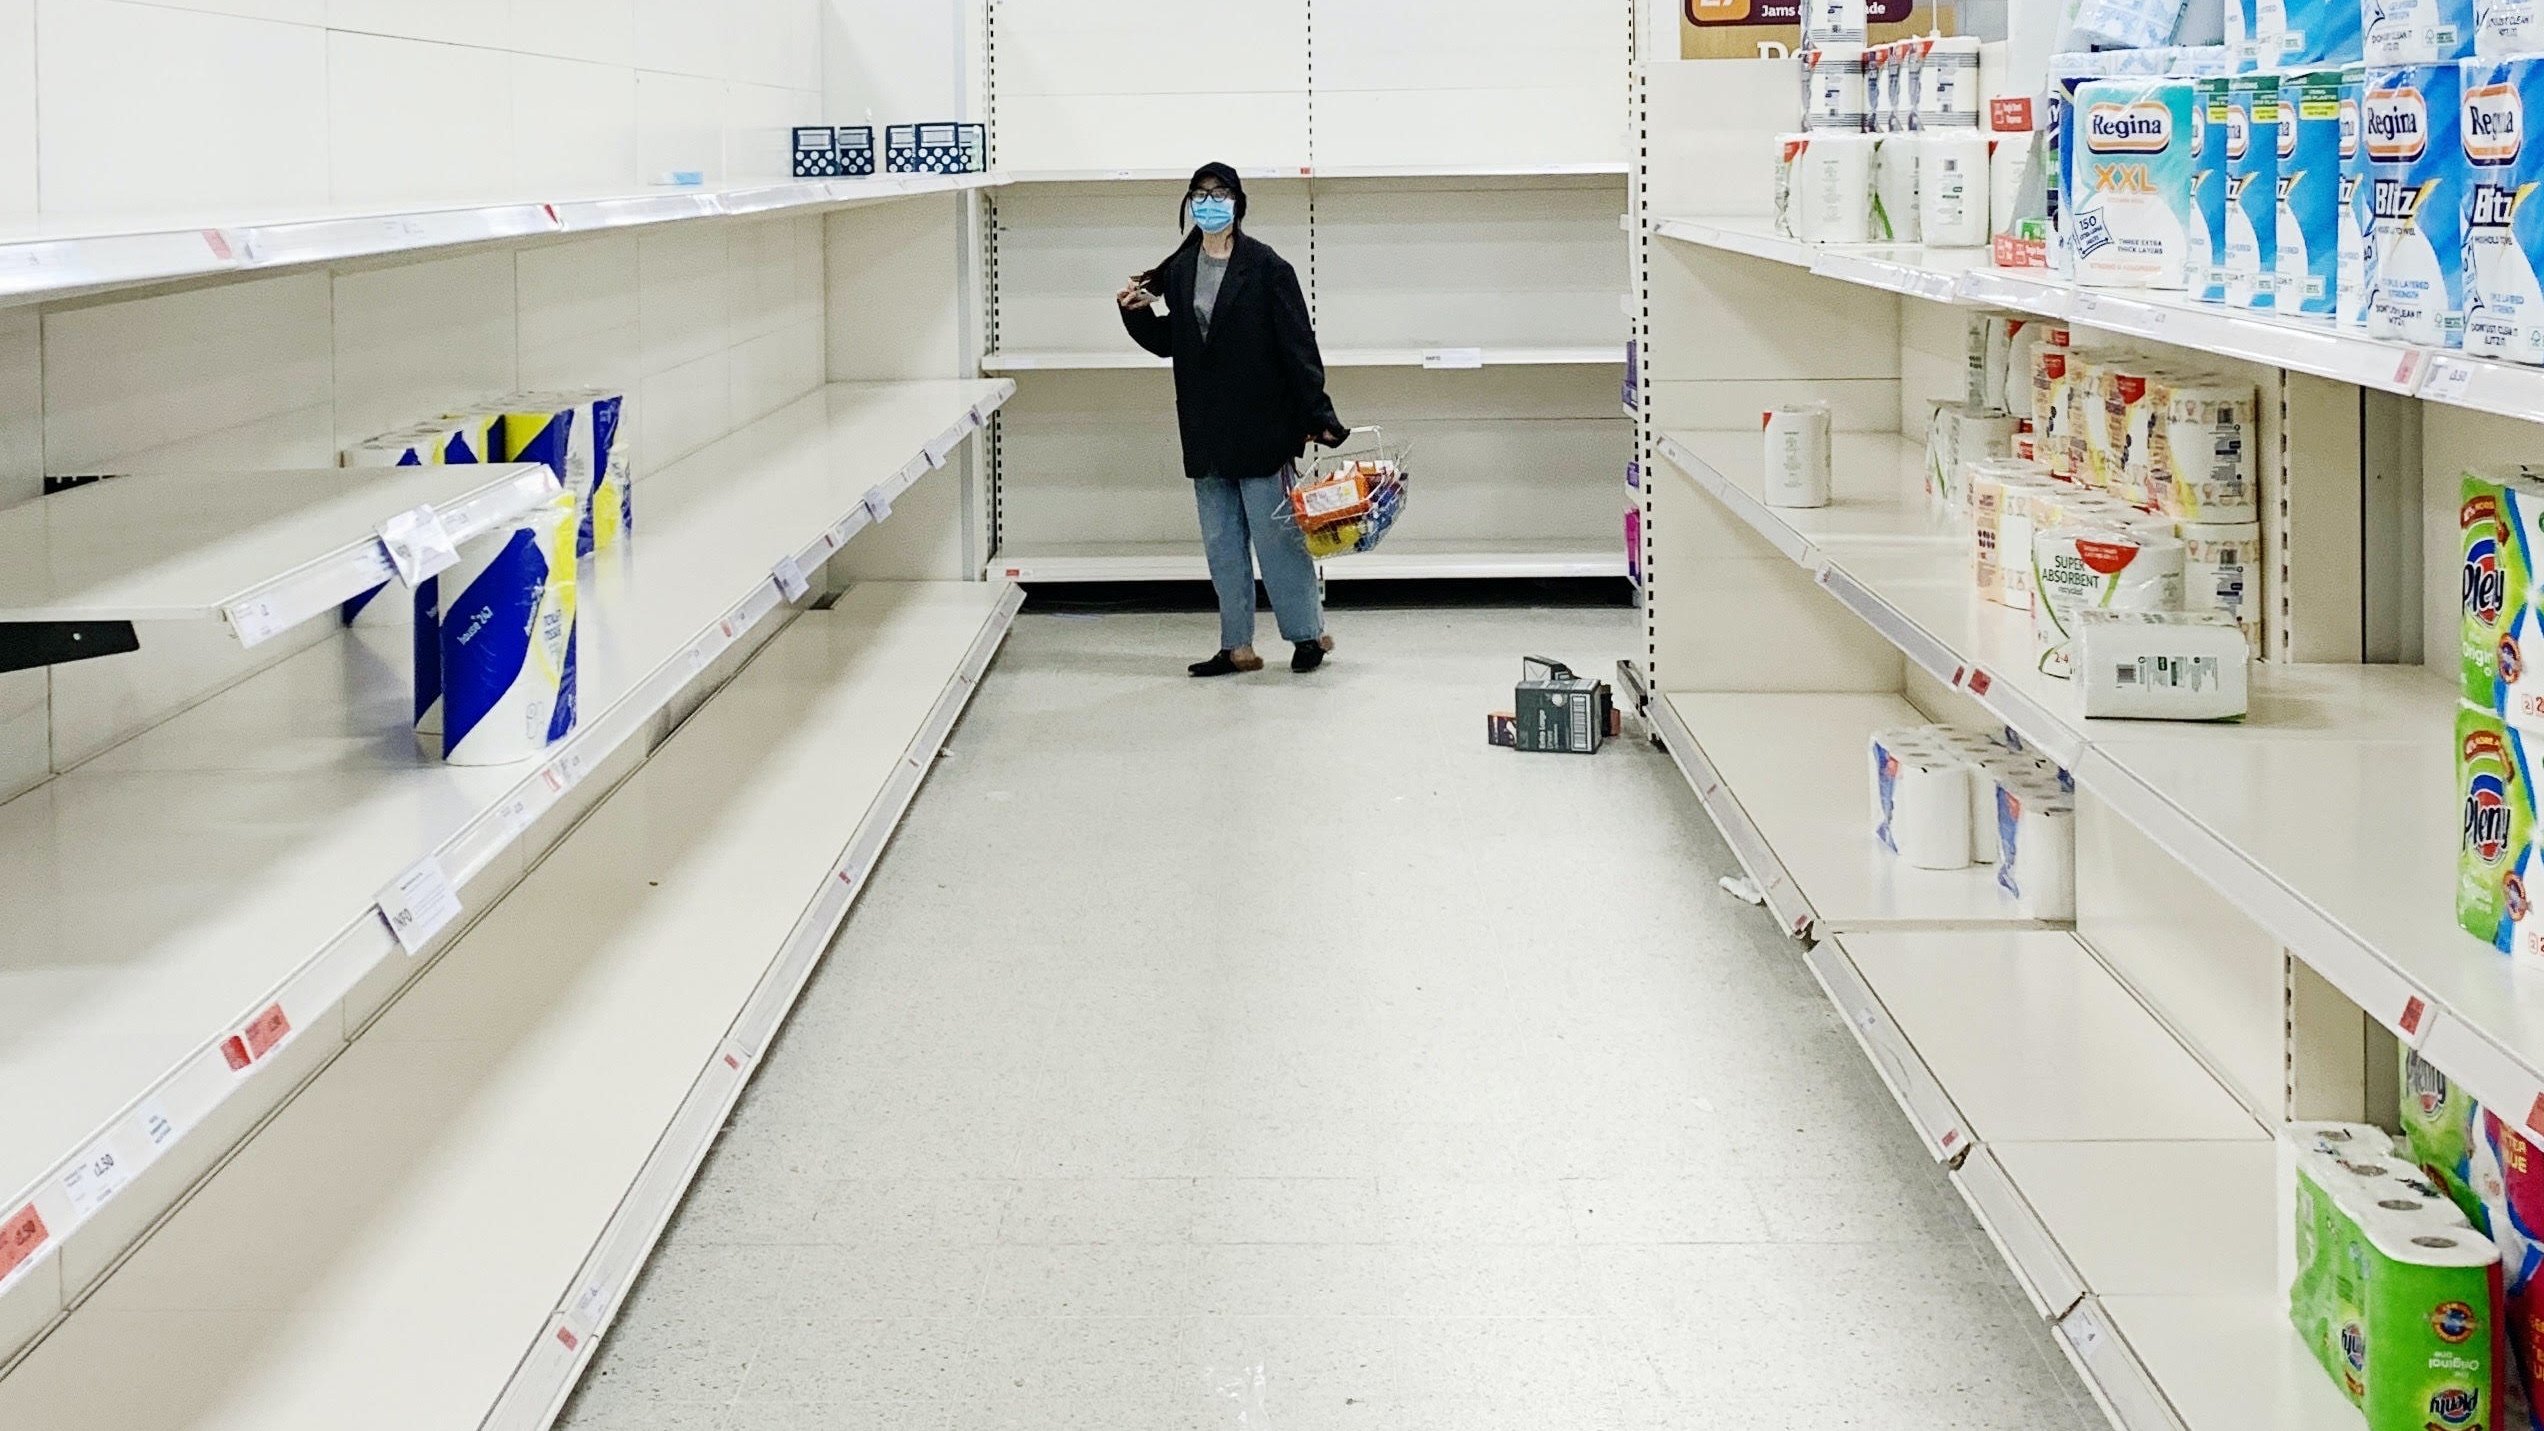 Empty supermarket CREDIT Carlos de Toro on Unspash